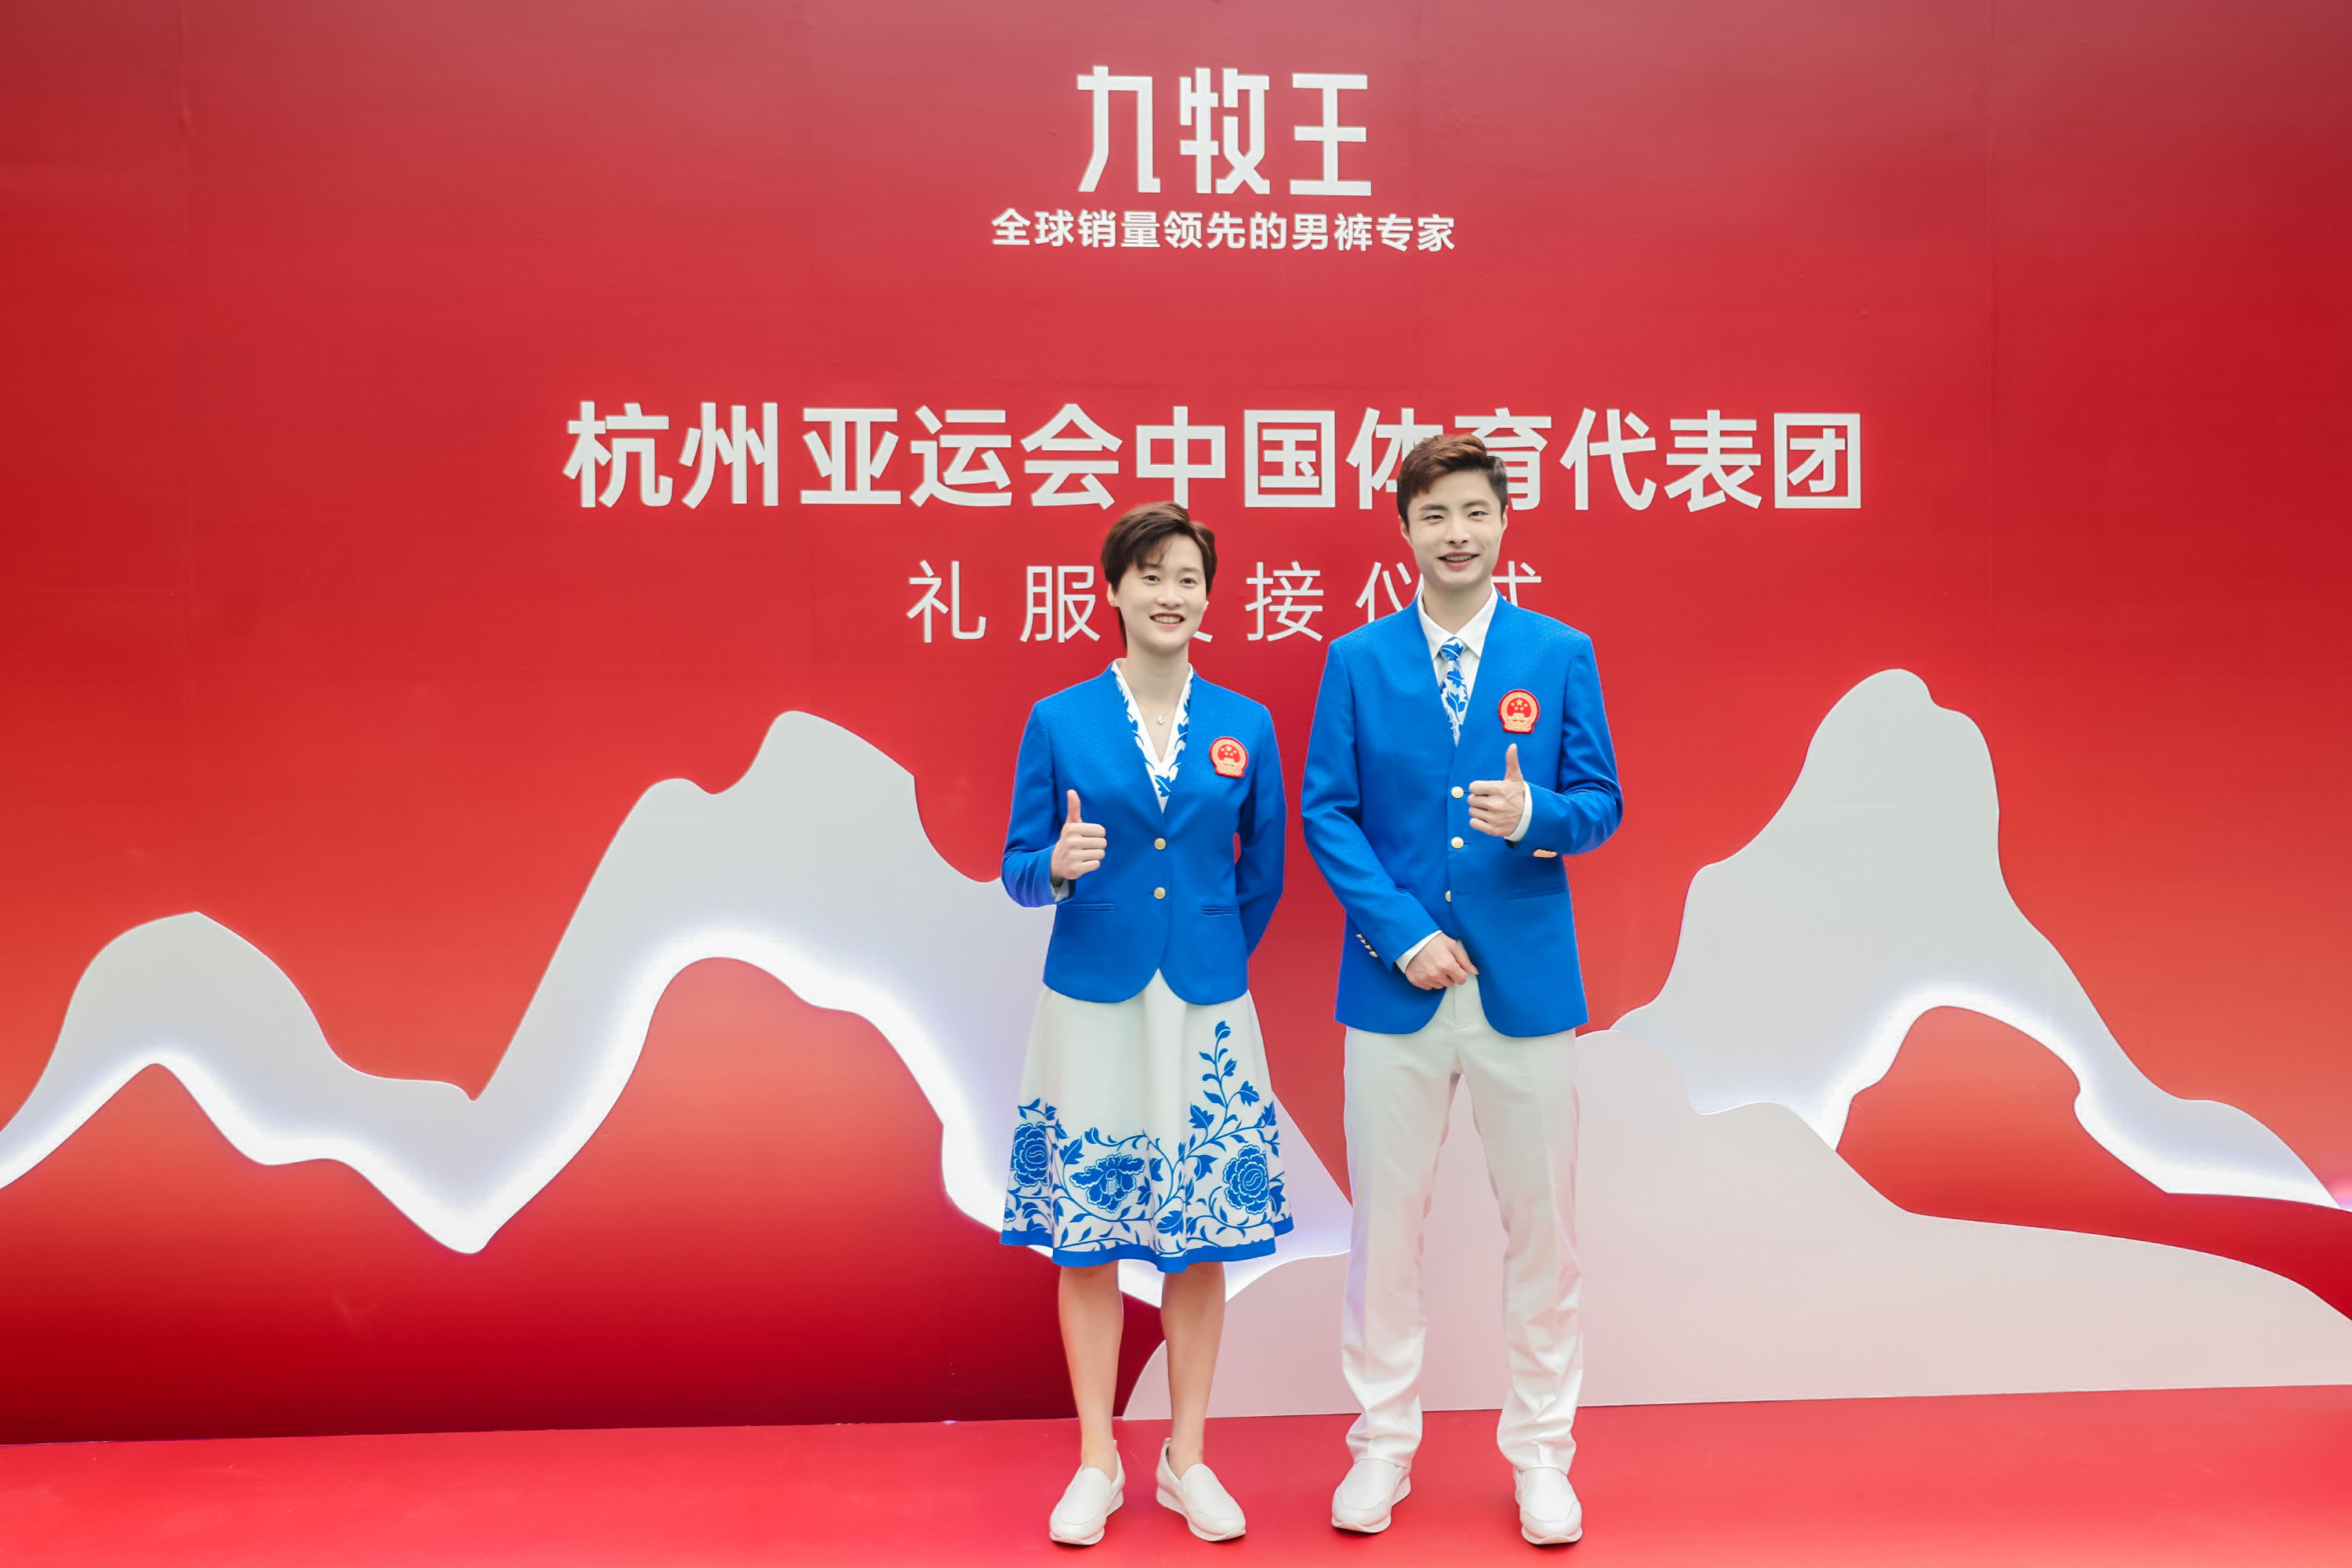 群“星”闪“耀”——解读杭州亚运会中国体育代表团礼服设计